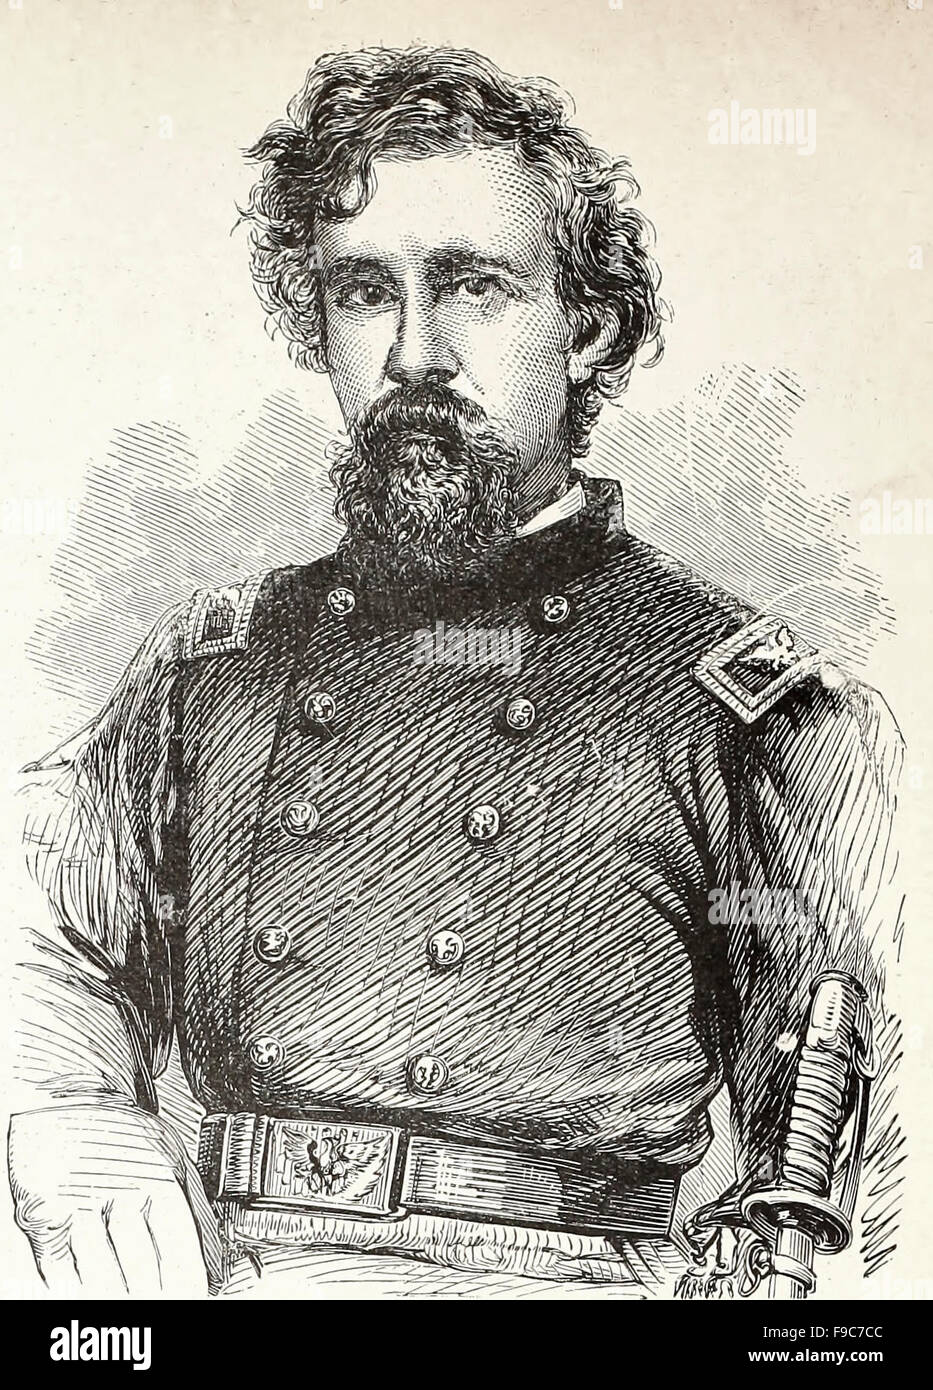 Le général George F Shepley - George Foster Shepley (1 janvier 1819 - 20 juillet 1878) est un général de l'Armée de l'Union pendant la guerre civile américaine. Il a été nommé 18e militaire et gouverneur de la Louisiane par le général Benjamin Butler en juin 1862. Il a servi plus tard comme un juge fédéral des États-Unis. Banque D'Images